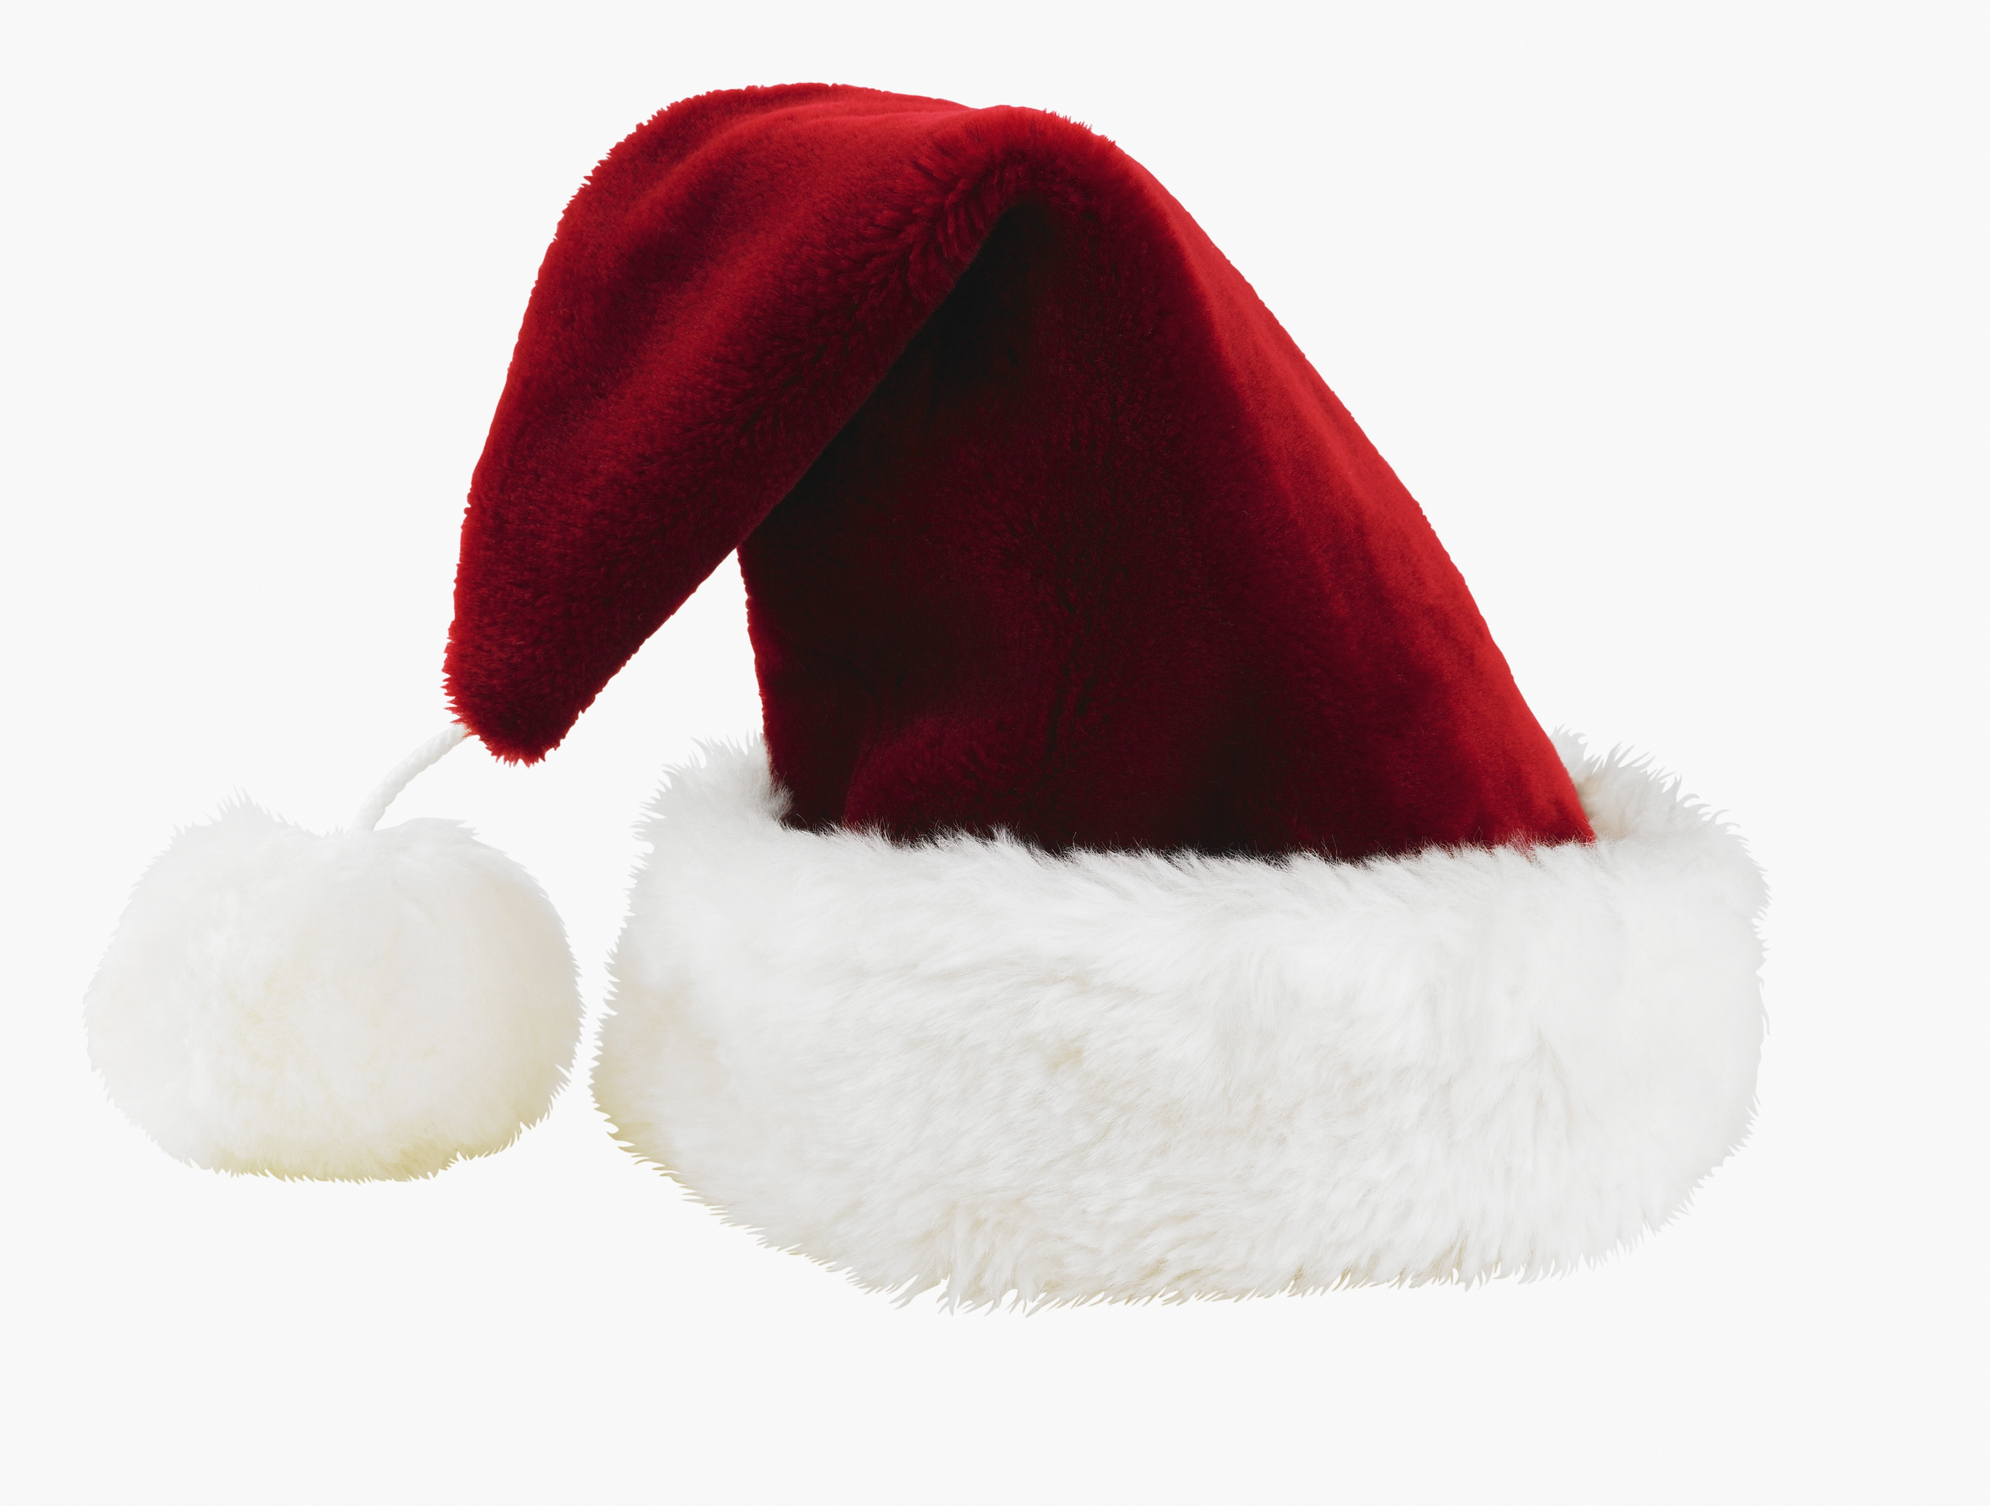 a Santa hat